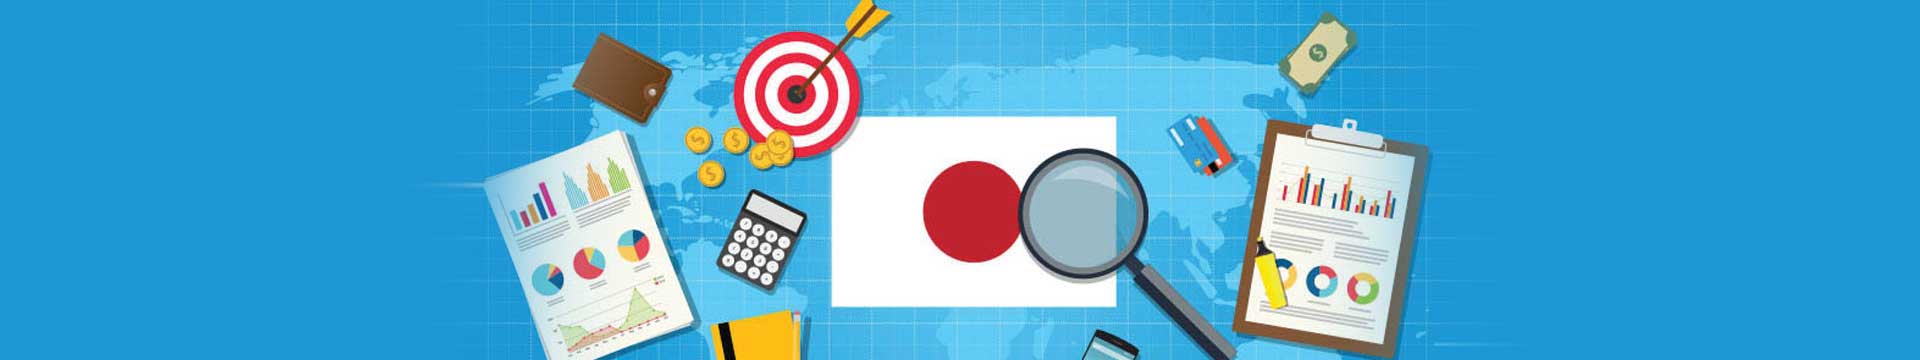 ขายของ online ให้เด่นด้วยวิธีทำ Content Marketing สไตล์ญี่ปุ่น